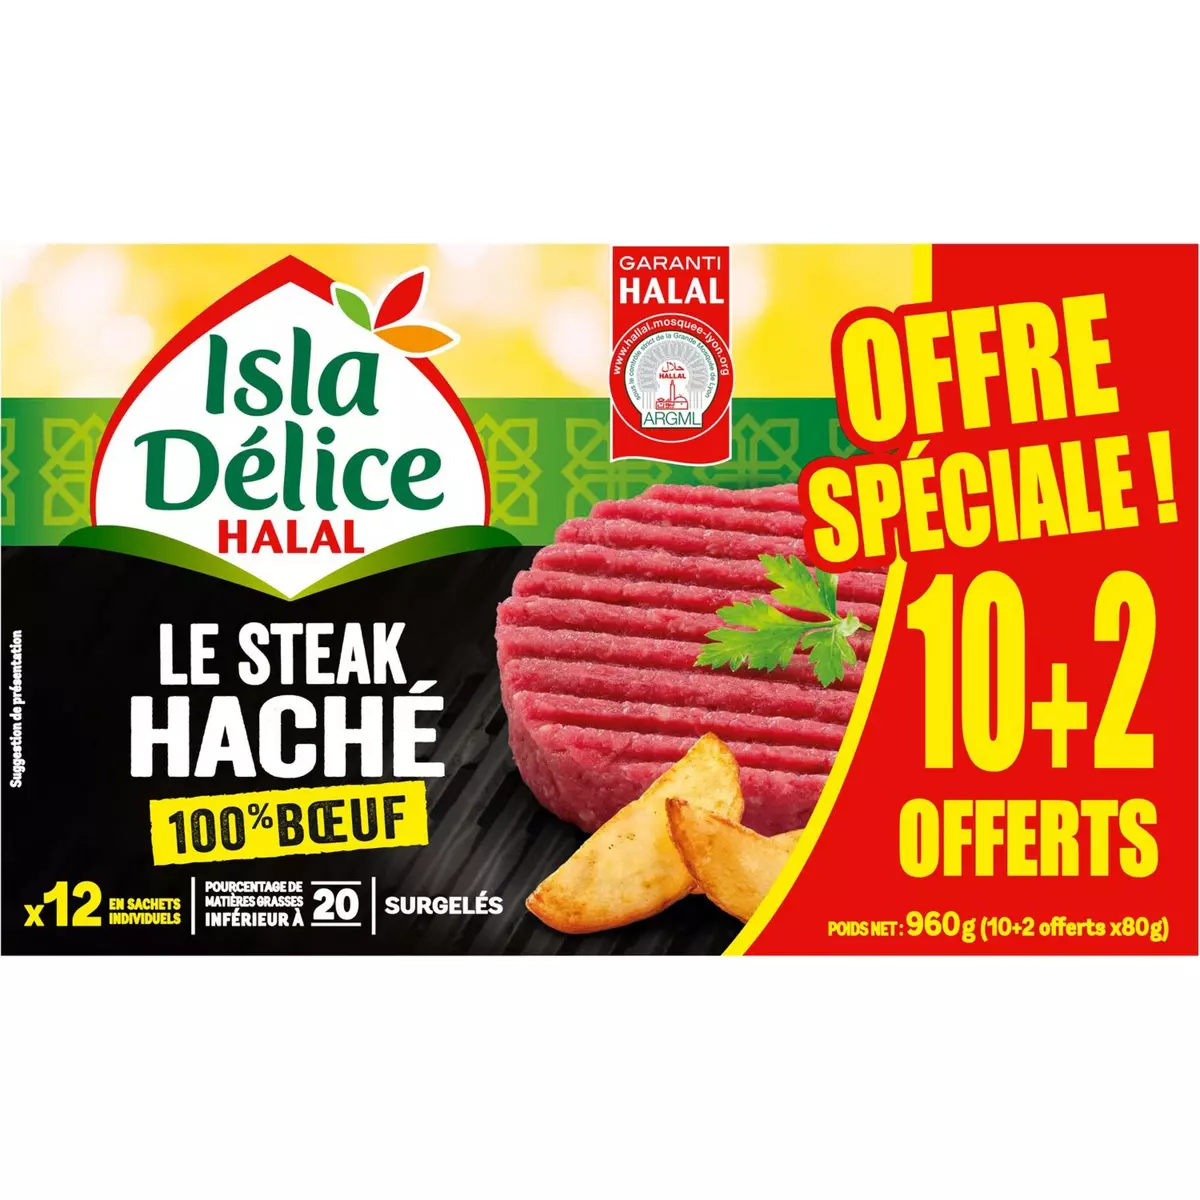 ISLA DELICE Steaks hachés 100% bœuf halal 10+2 offerts  960g